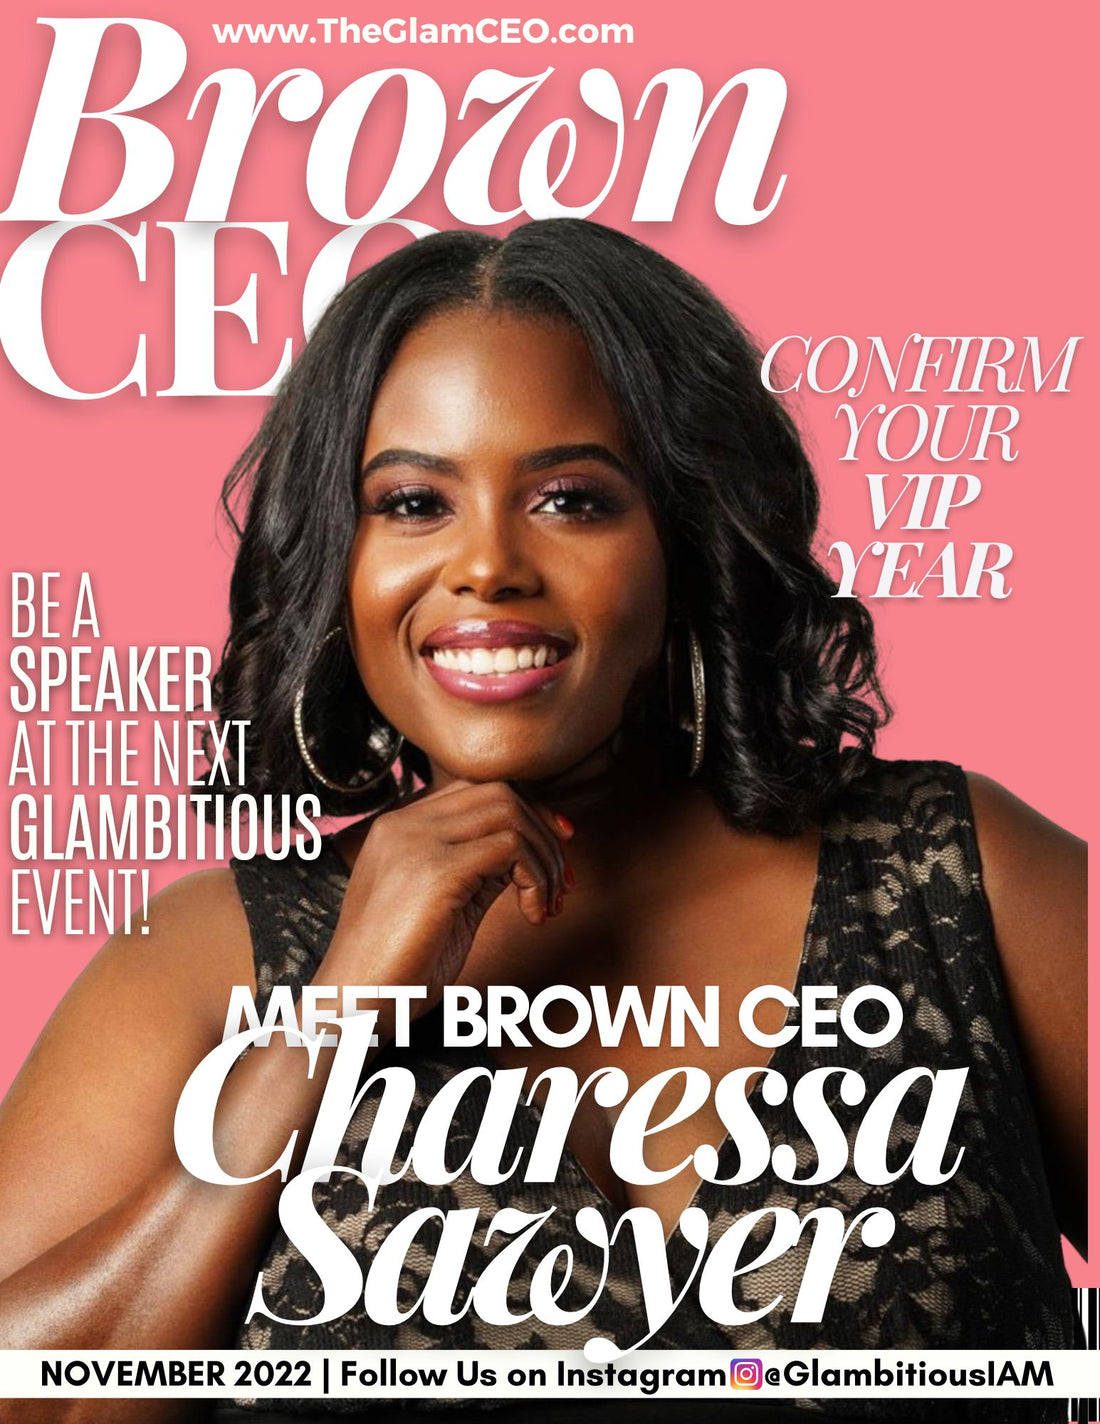 Brown CEO: Charessa Sawyer